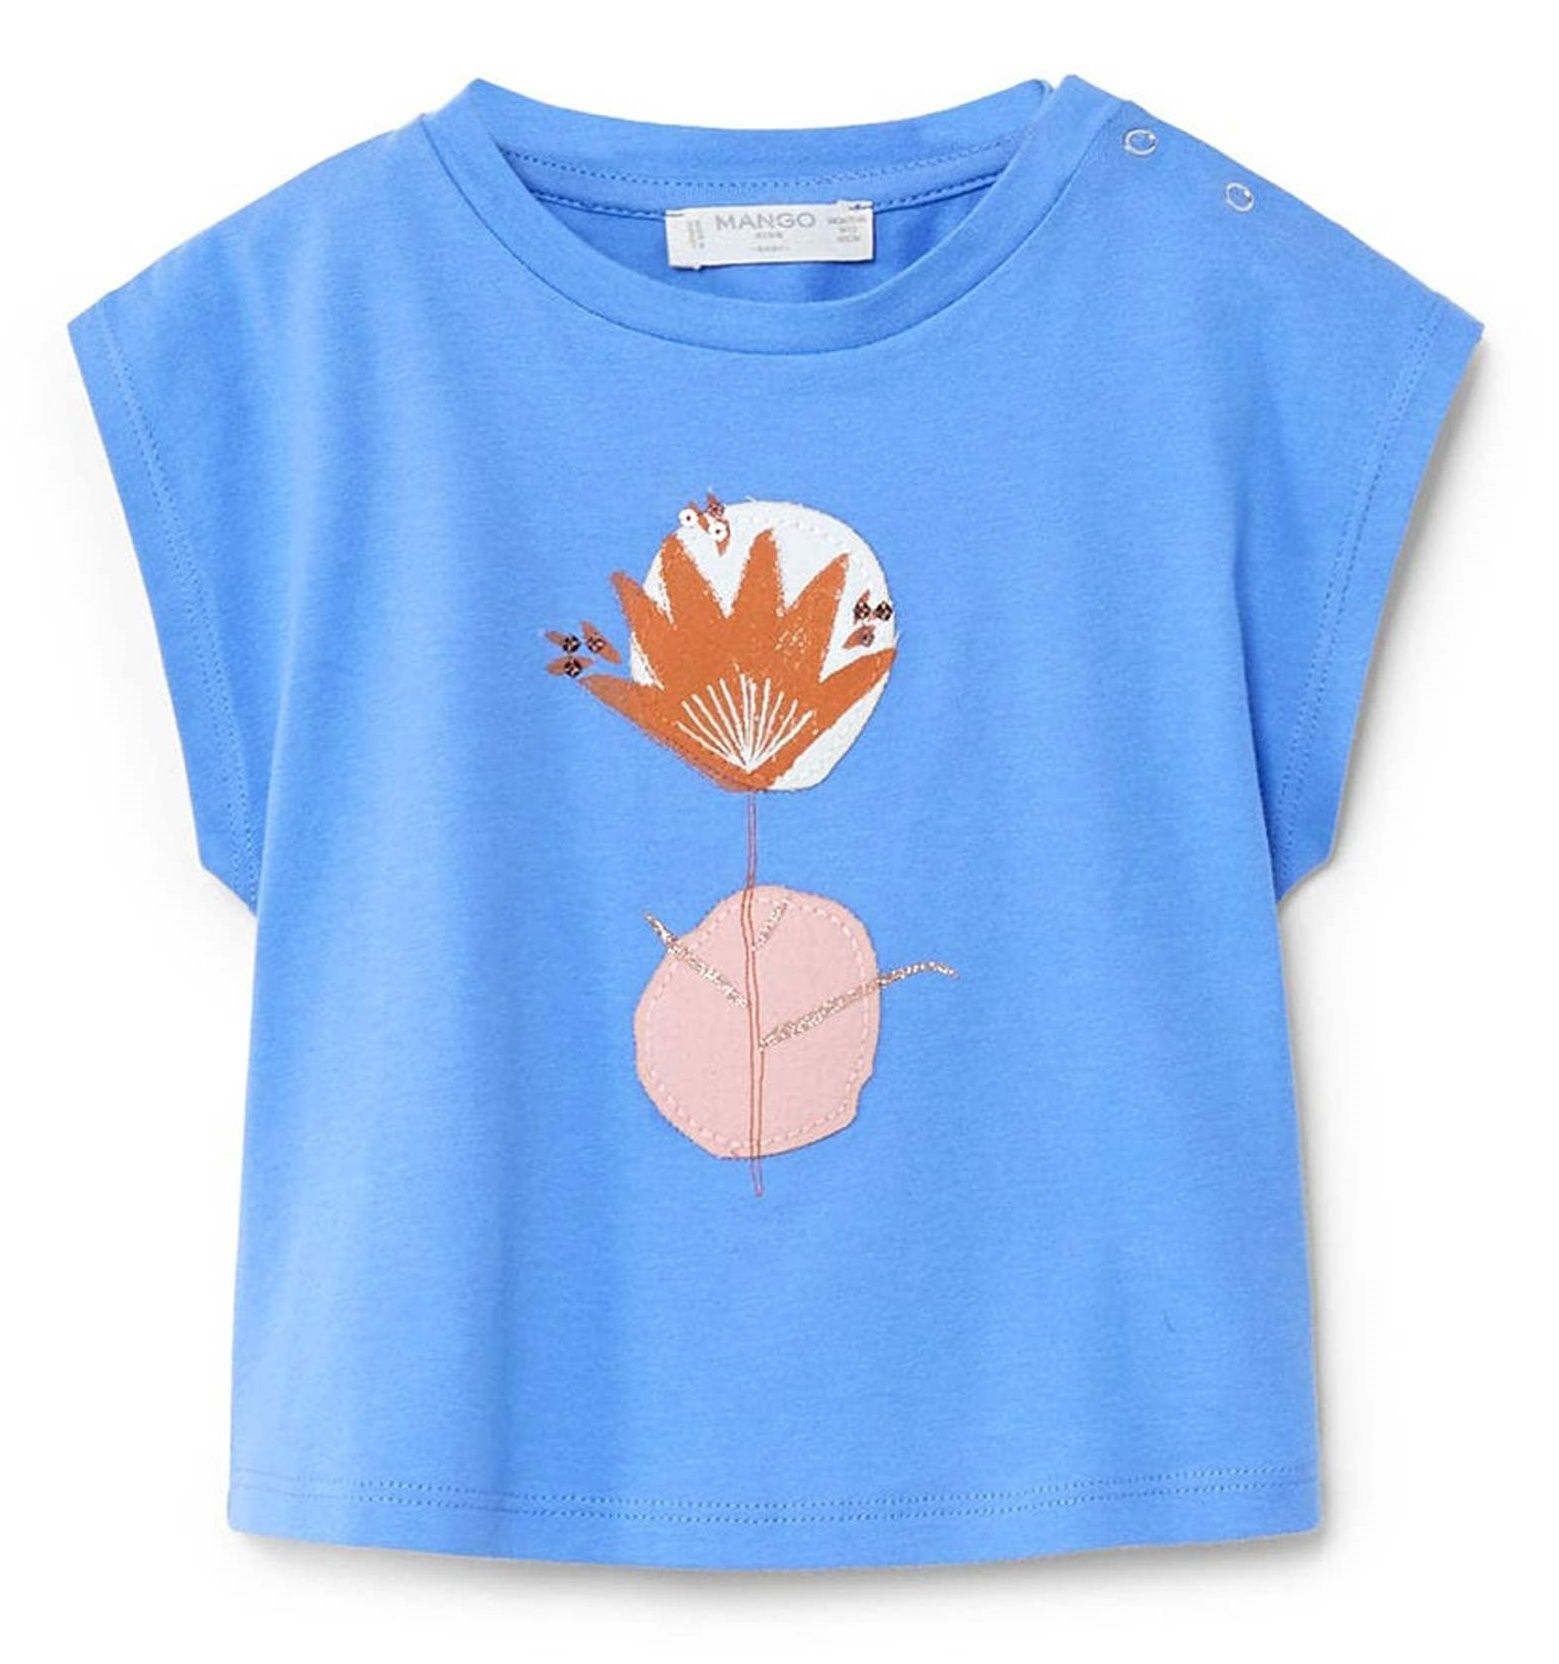 تی شرت نخی یقه گرد نوزادی دخترانه - مانگو - آبي - 2